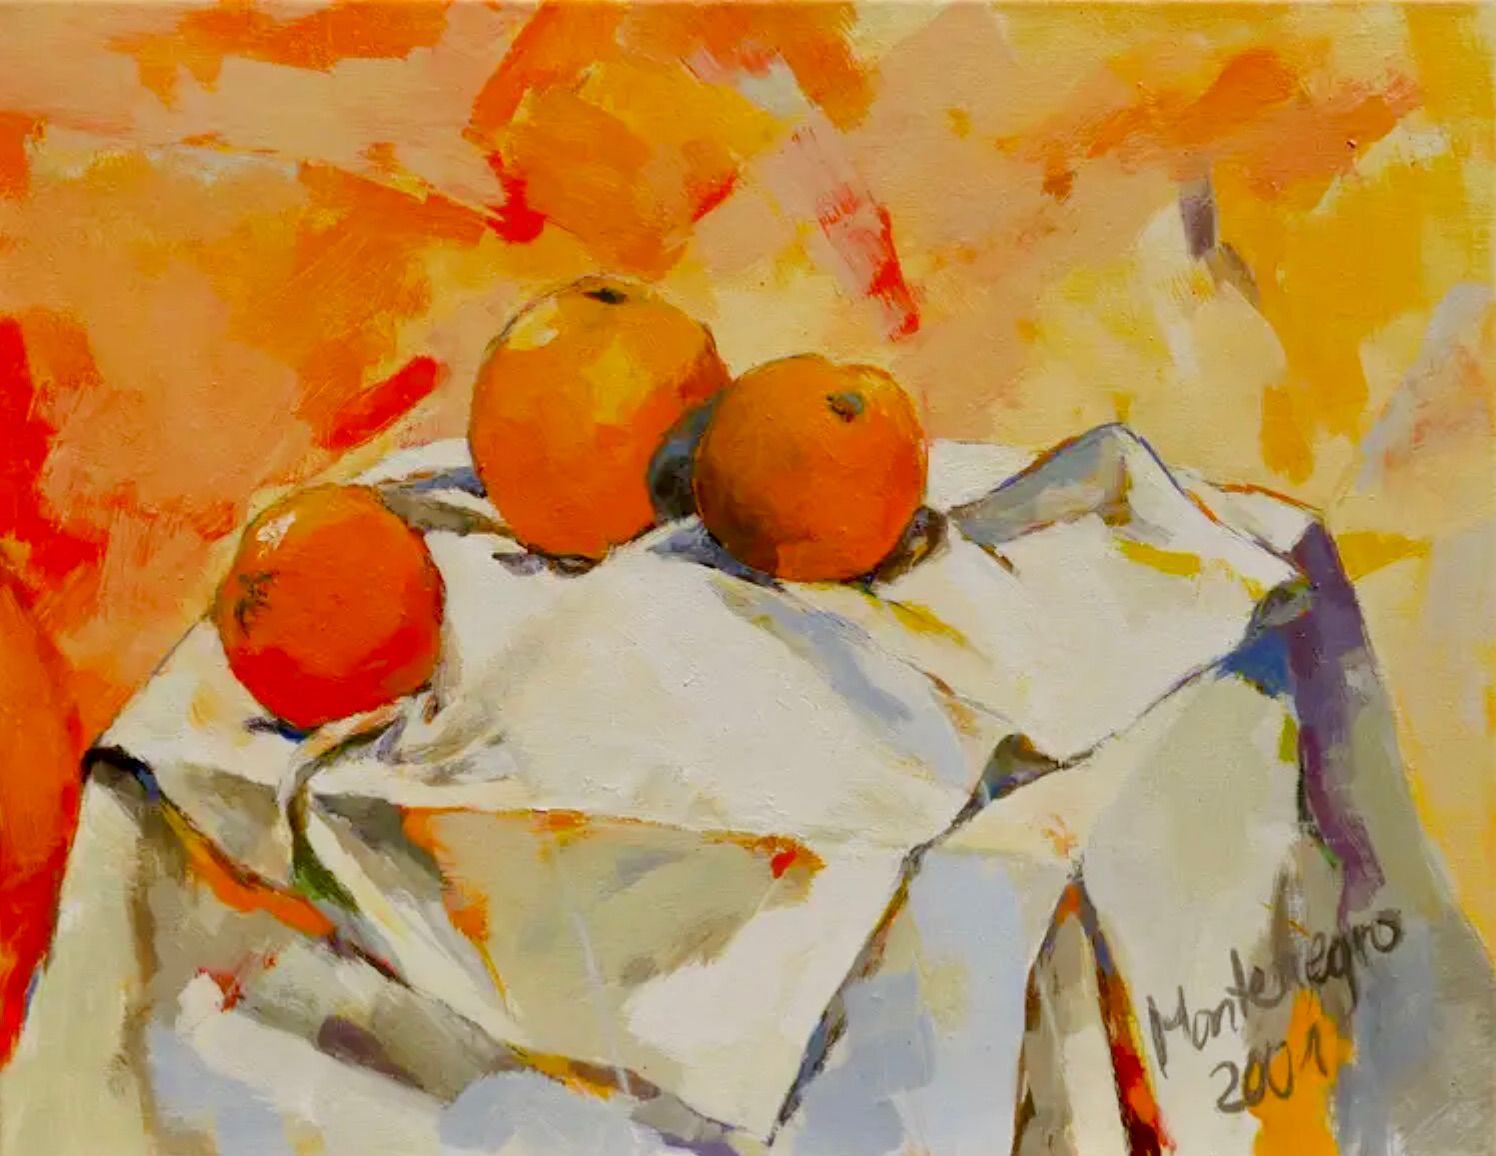 Miriam Montenegro pittura espressionista arancio su tela bianca